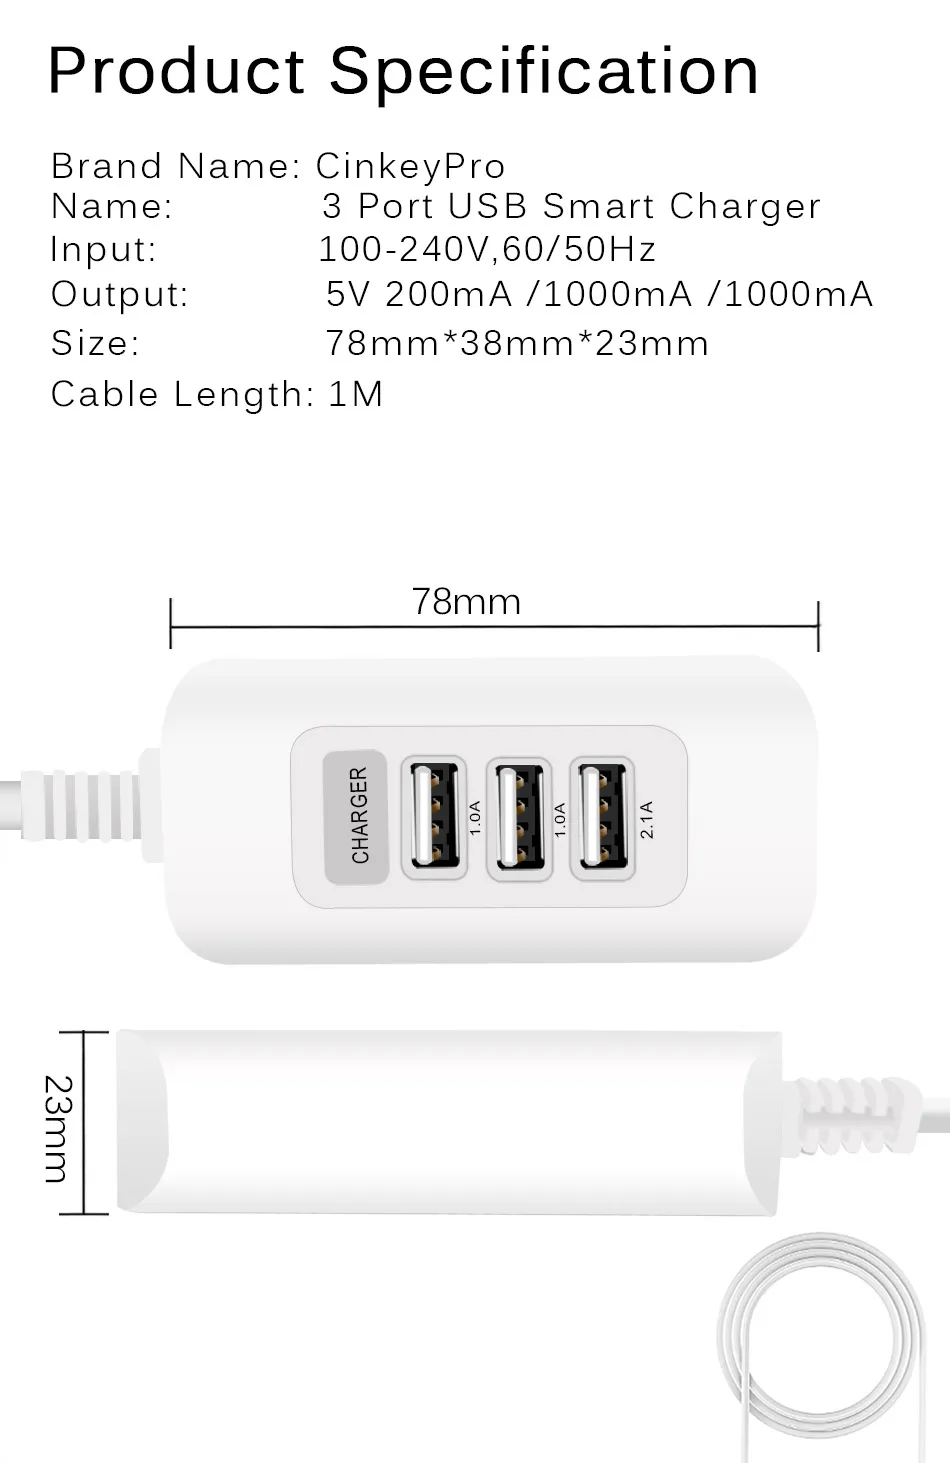 Новые 3-Порты USB Зарядное устройство 5 V/3A адаптер 1 м кабель для зарядки для iPhone 7 8 samsung Xiaomi IPad мобильного телефона, Универсальные наушники